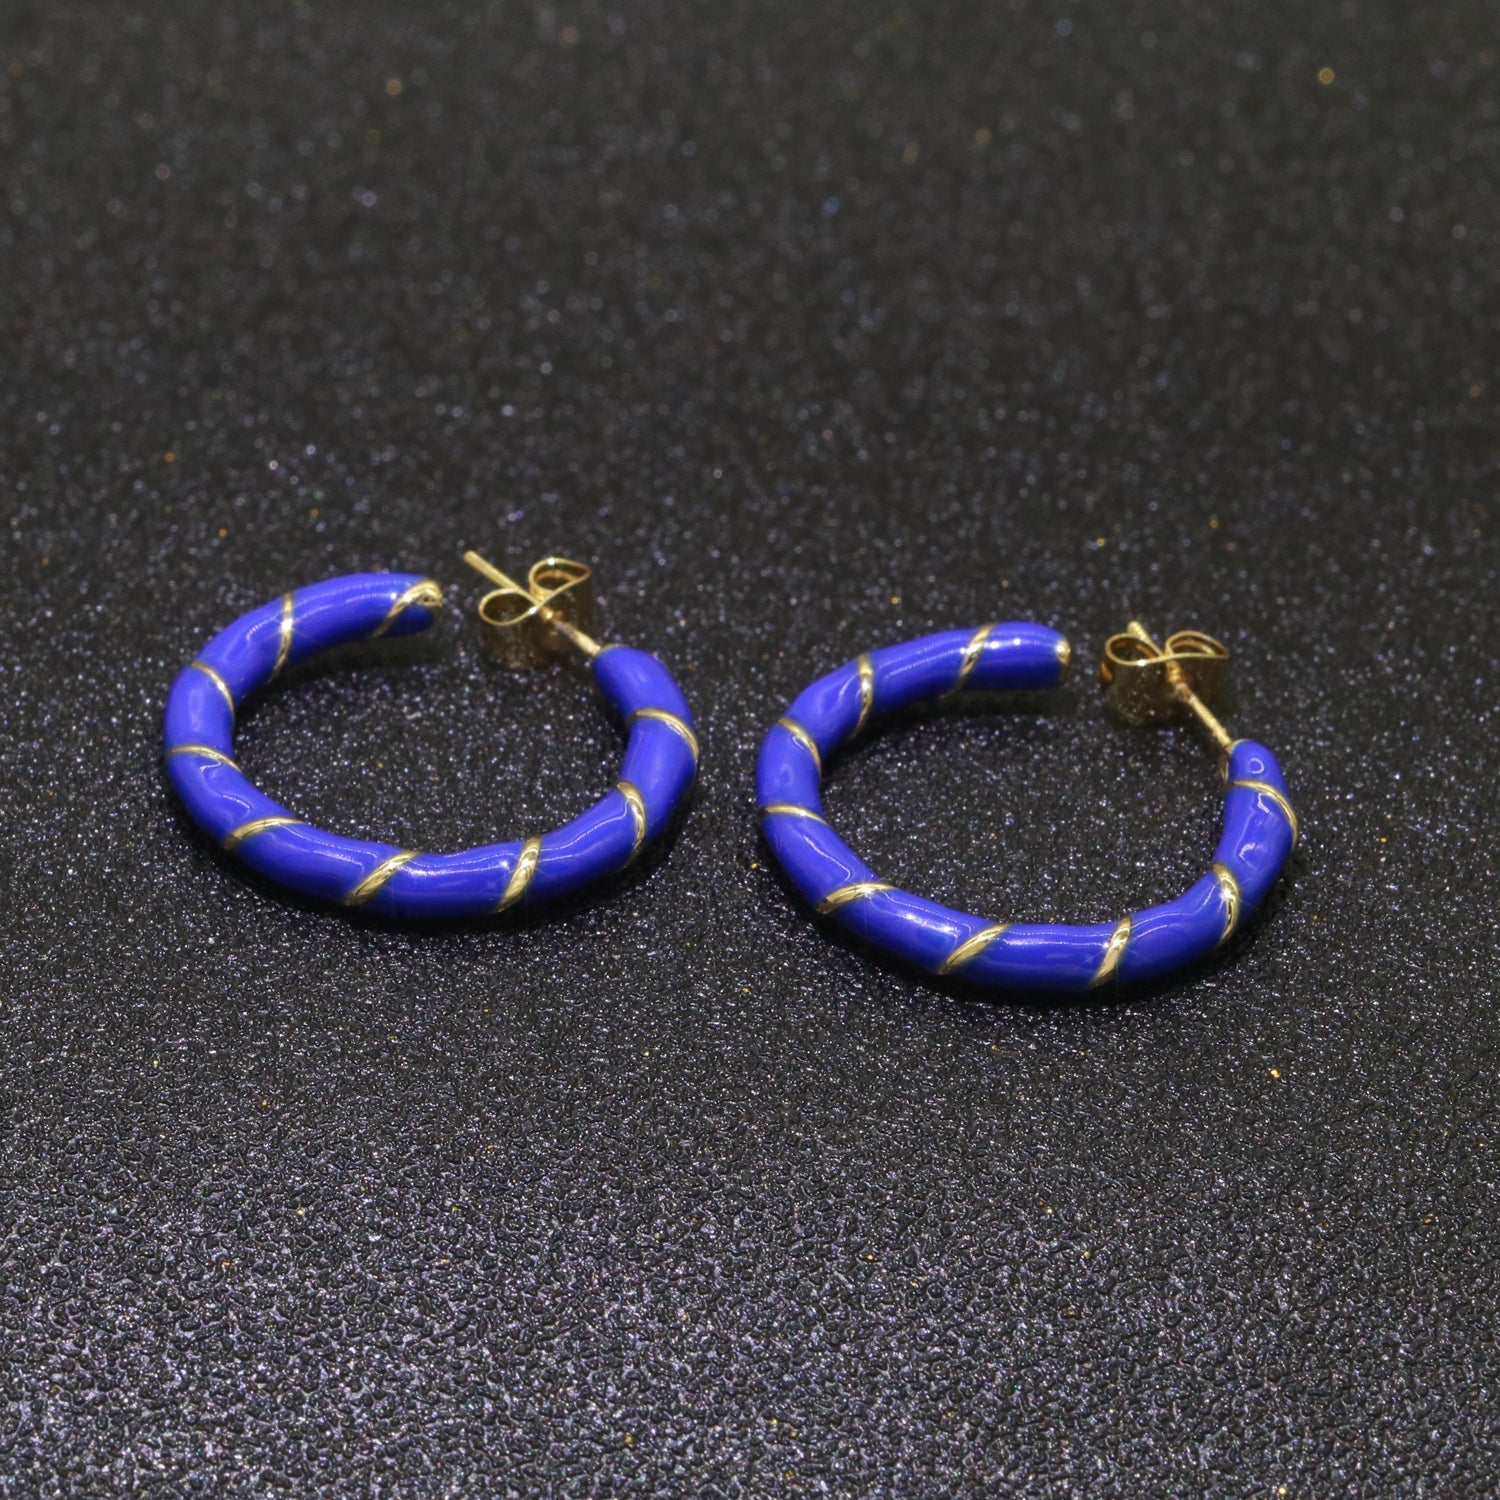 Dark Blue Enamel Hoop Earring with Gold Swirl 26mm Hoop earring Jewelry Gift - DLUXCA